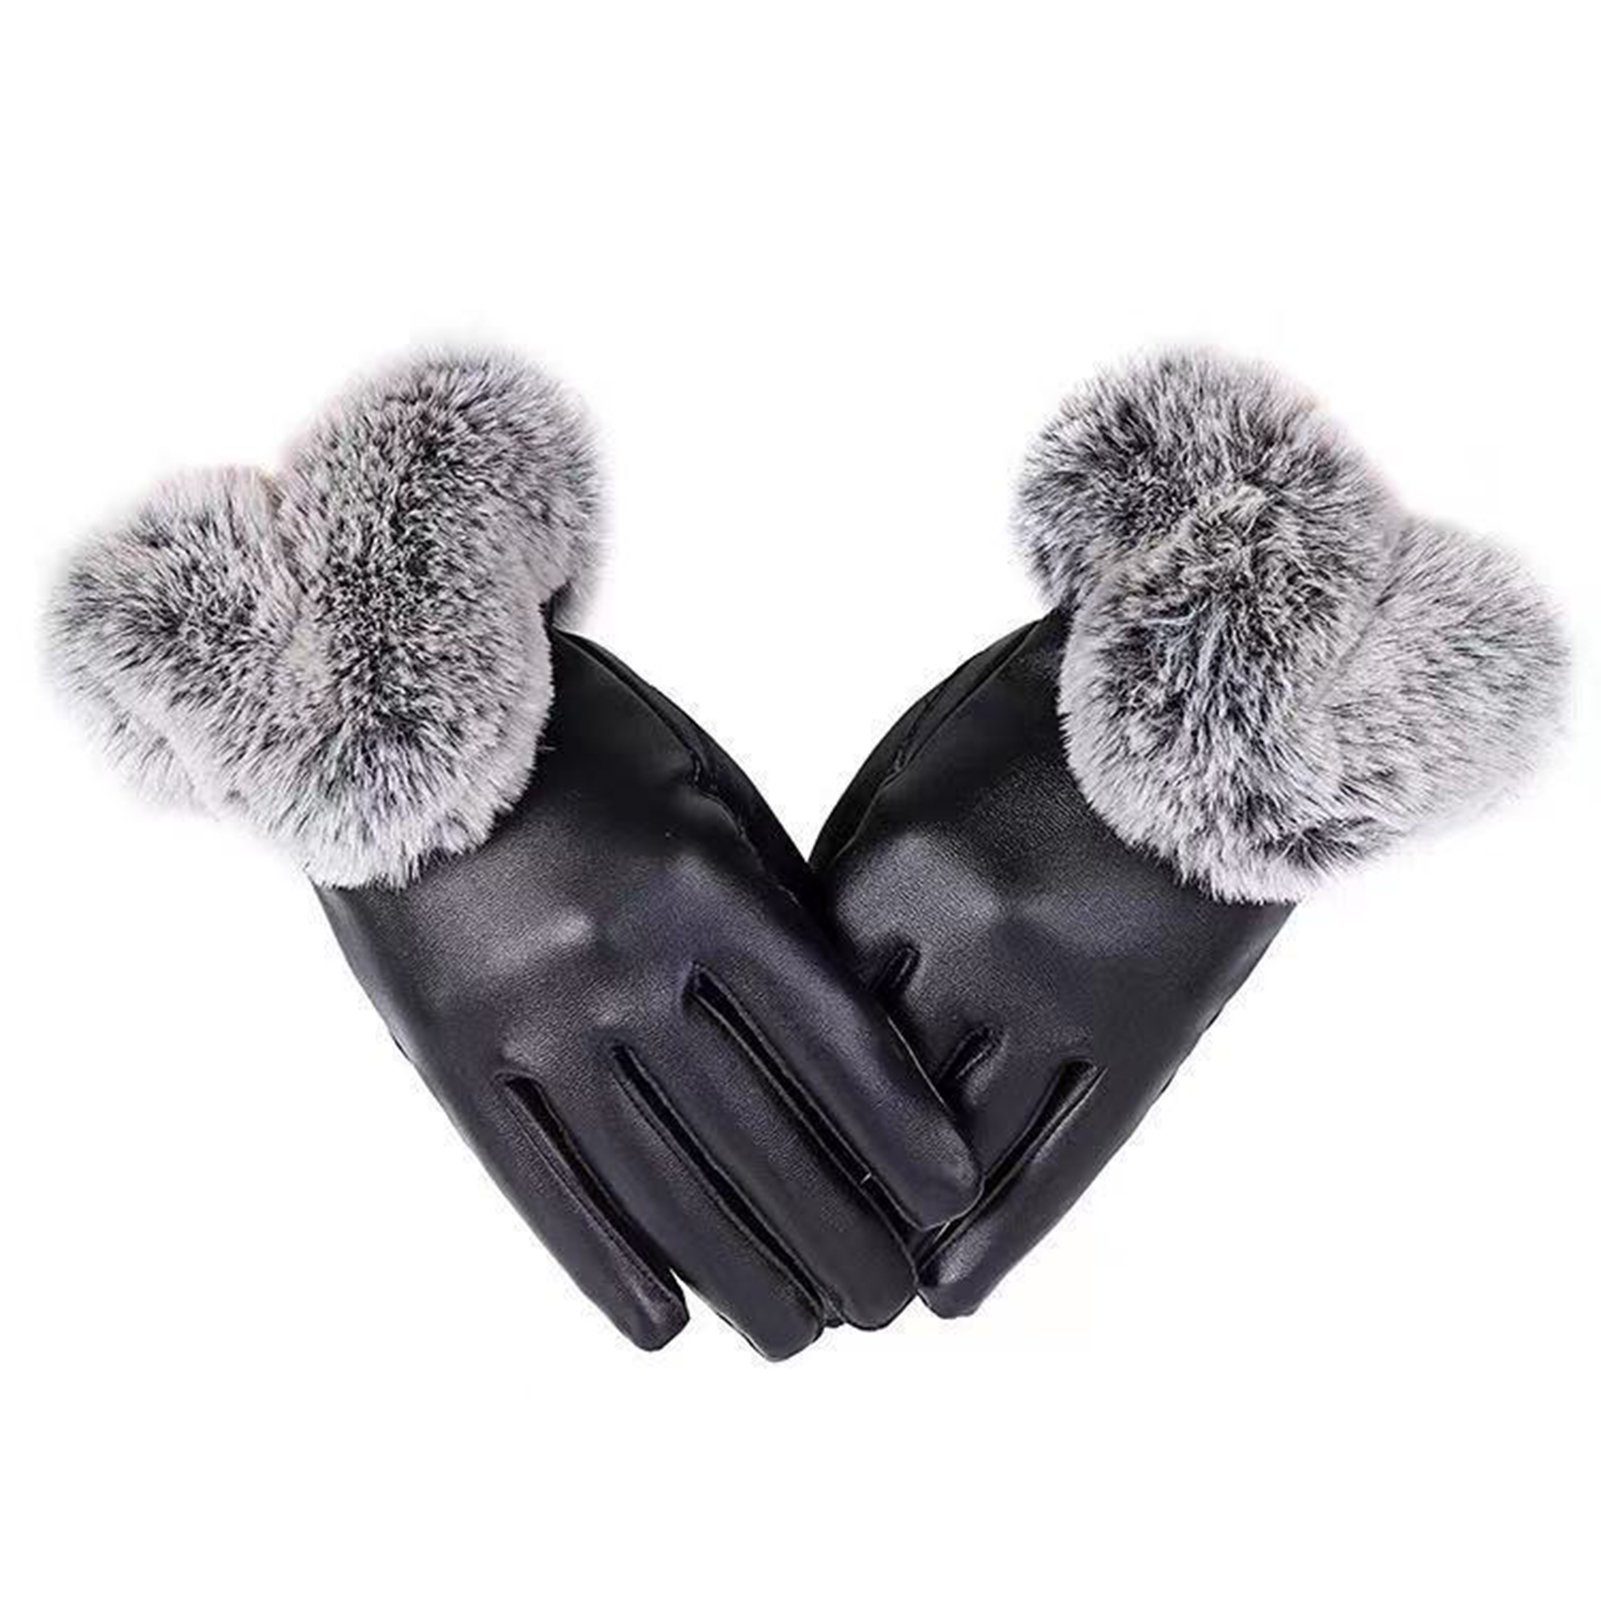 Blusmart Handschuhe Lederhandschuhe Kaninchenfell-PU-Handschuhe, Damen Für Bequem, Atmungsaktiv, Velvets